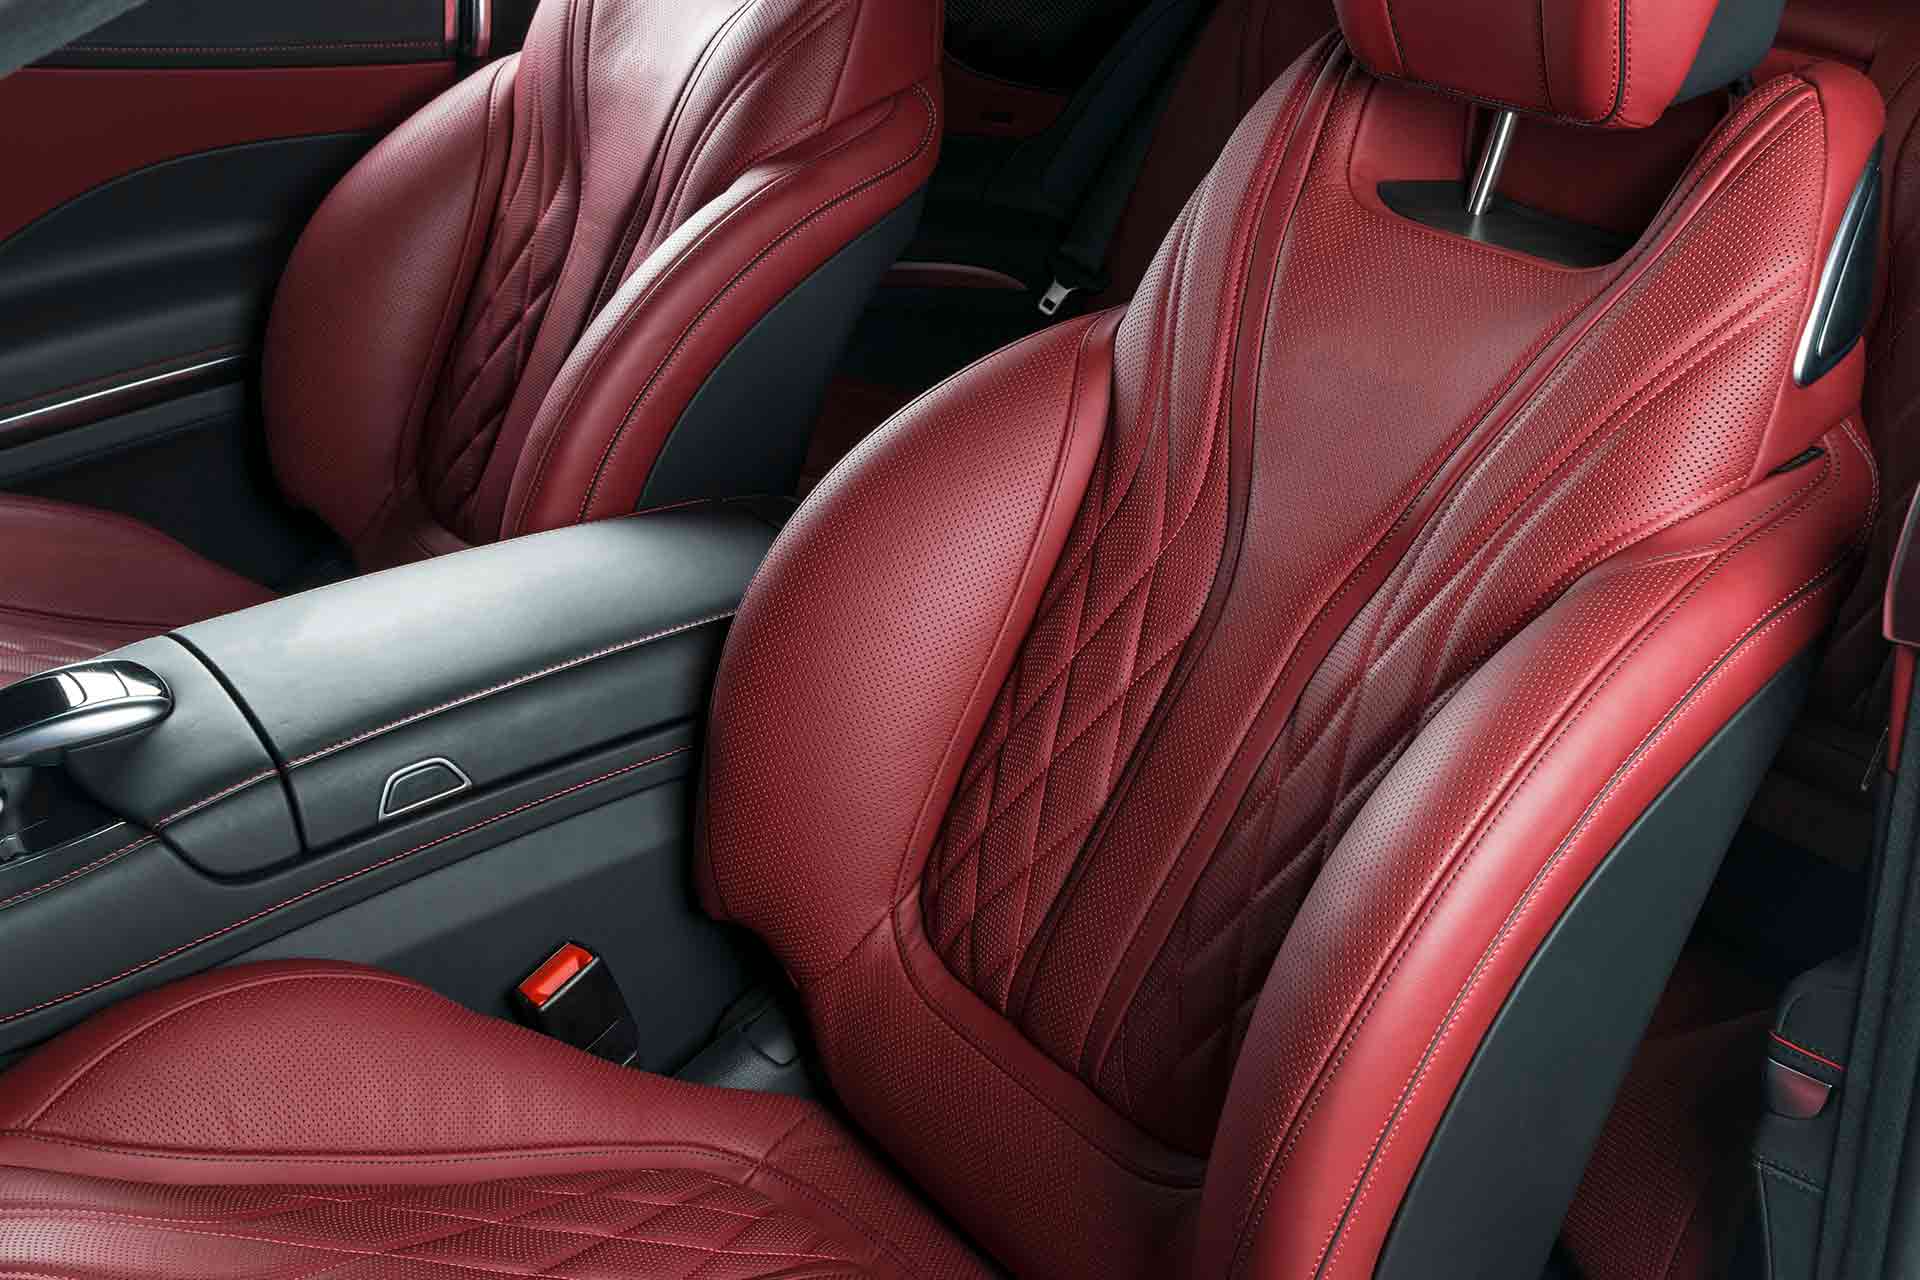 Leather Car Seat Repair Cost, Car Seat Reupholstering Uk